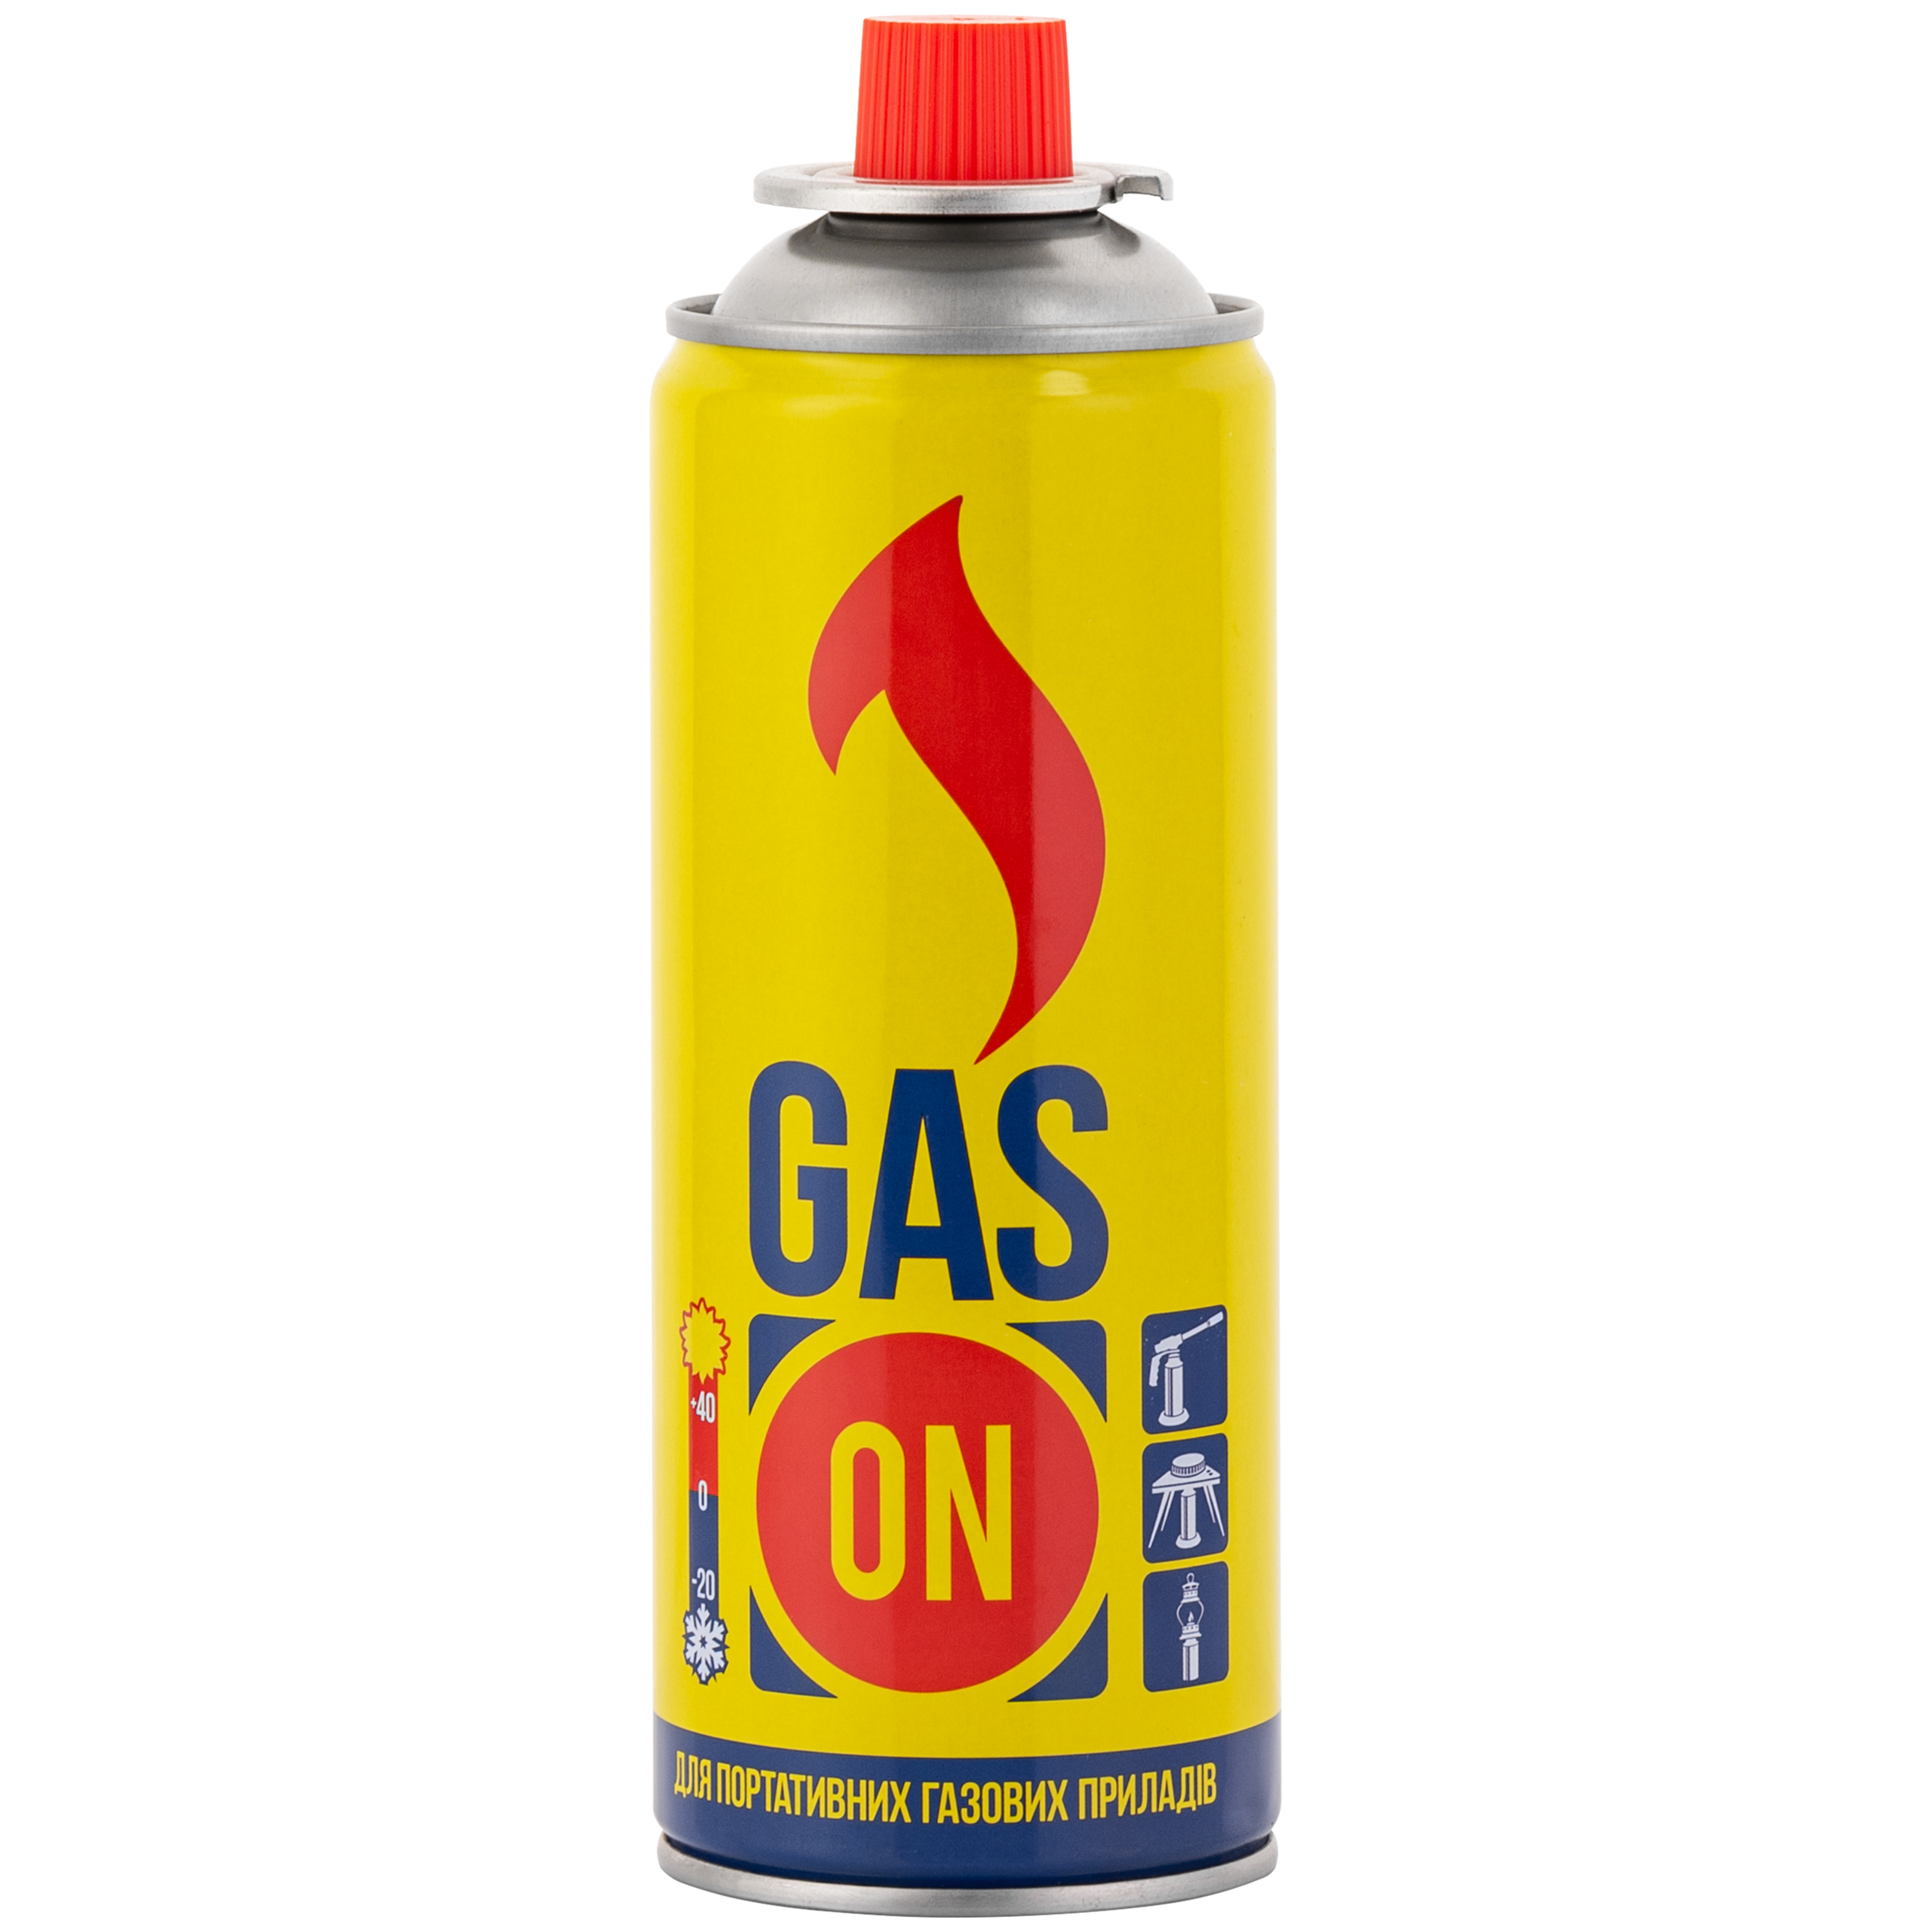 Газовые горелки GAS ON